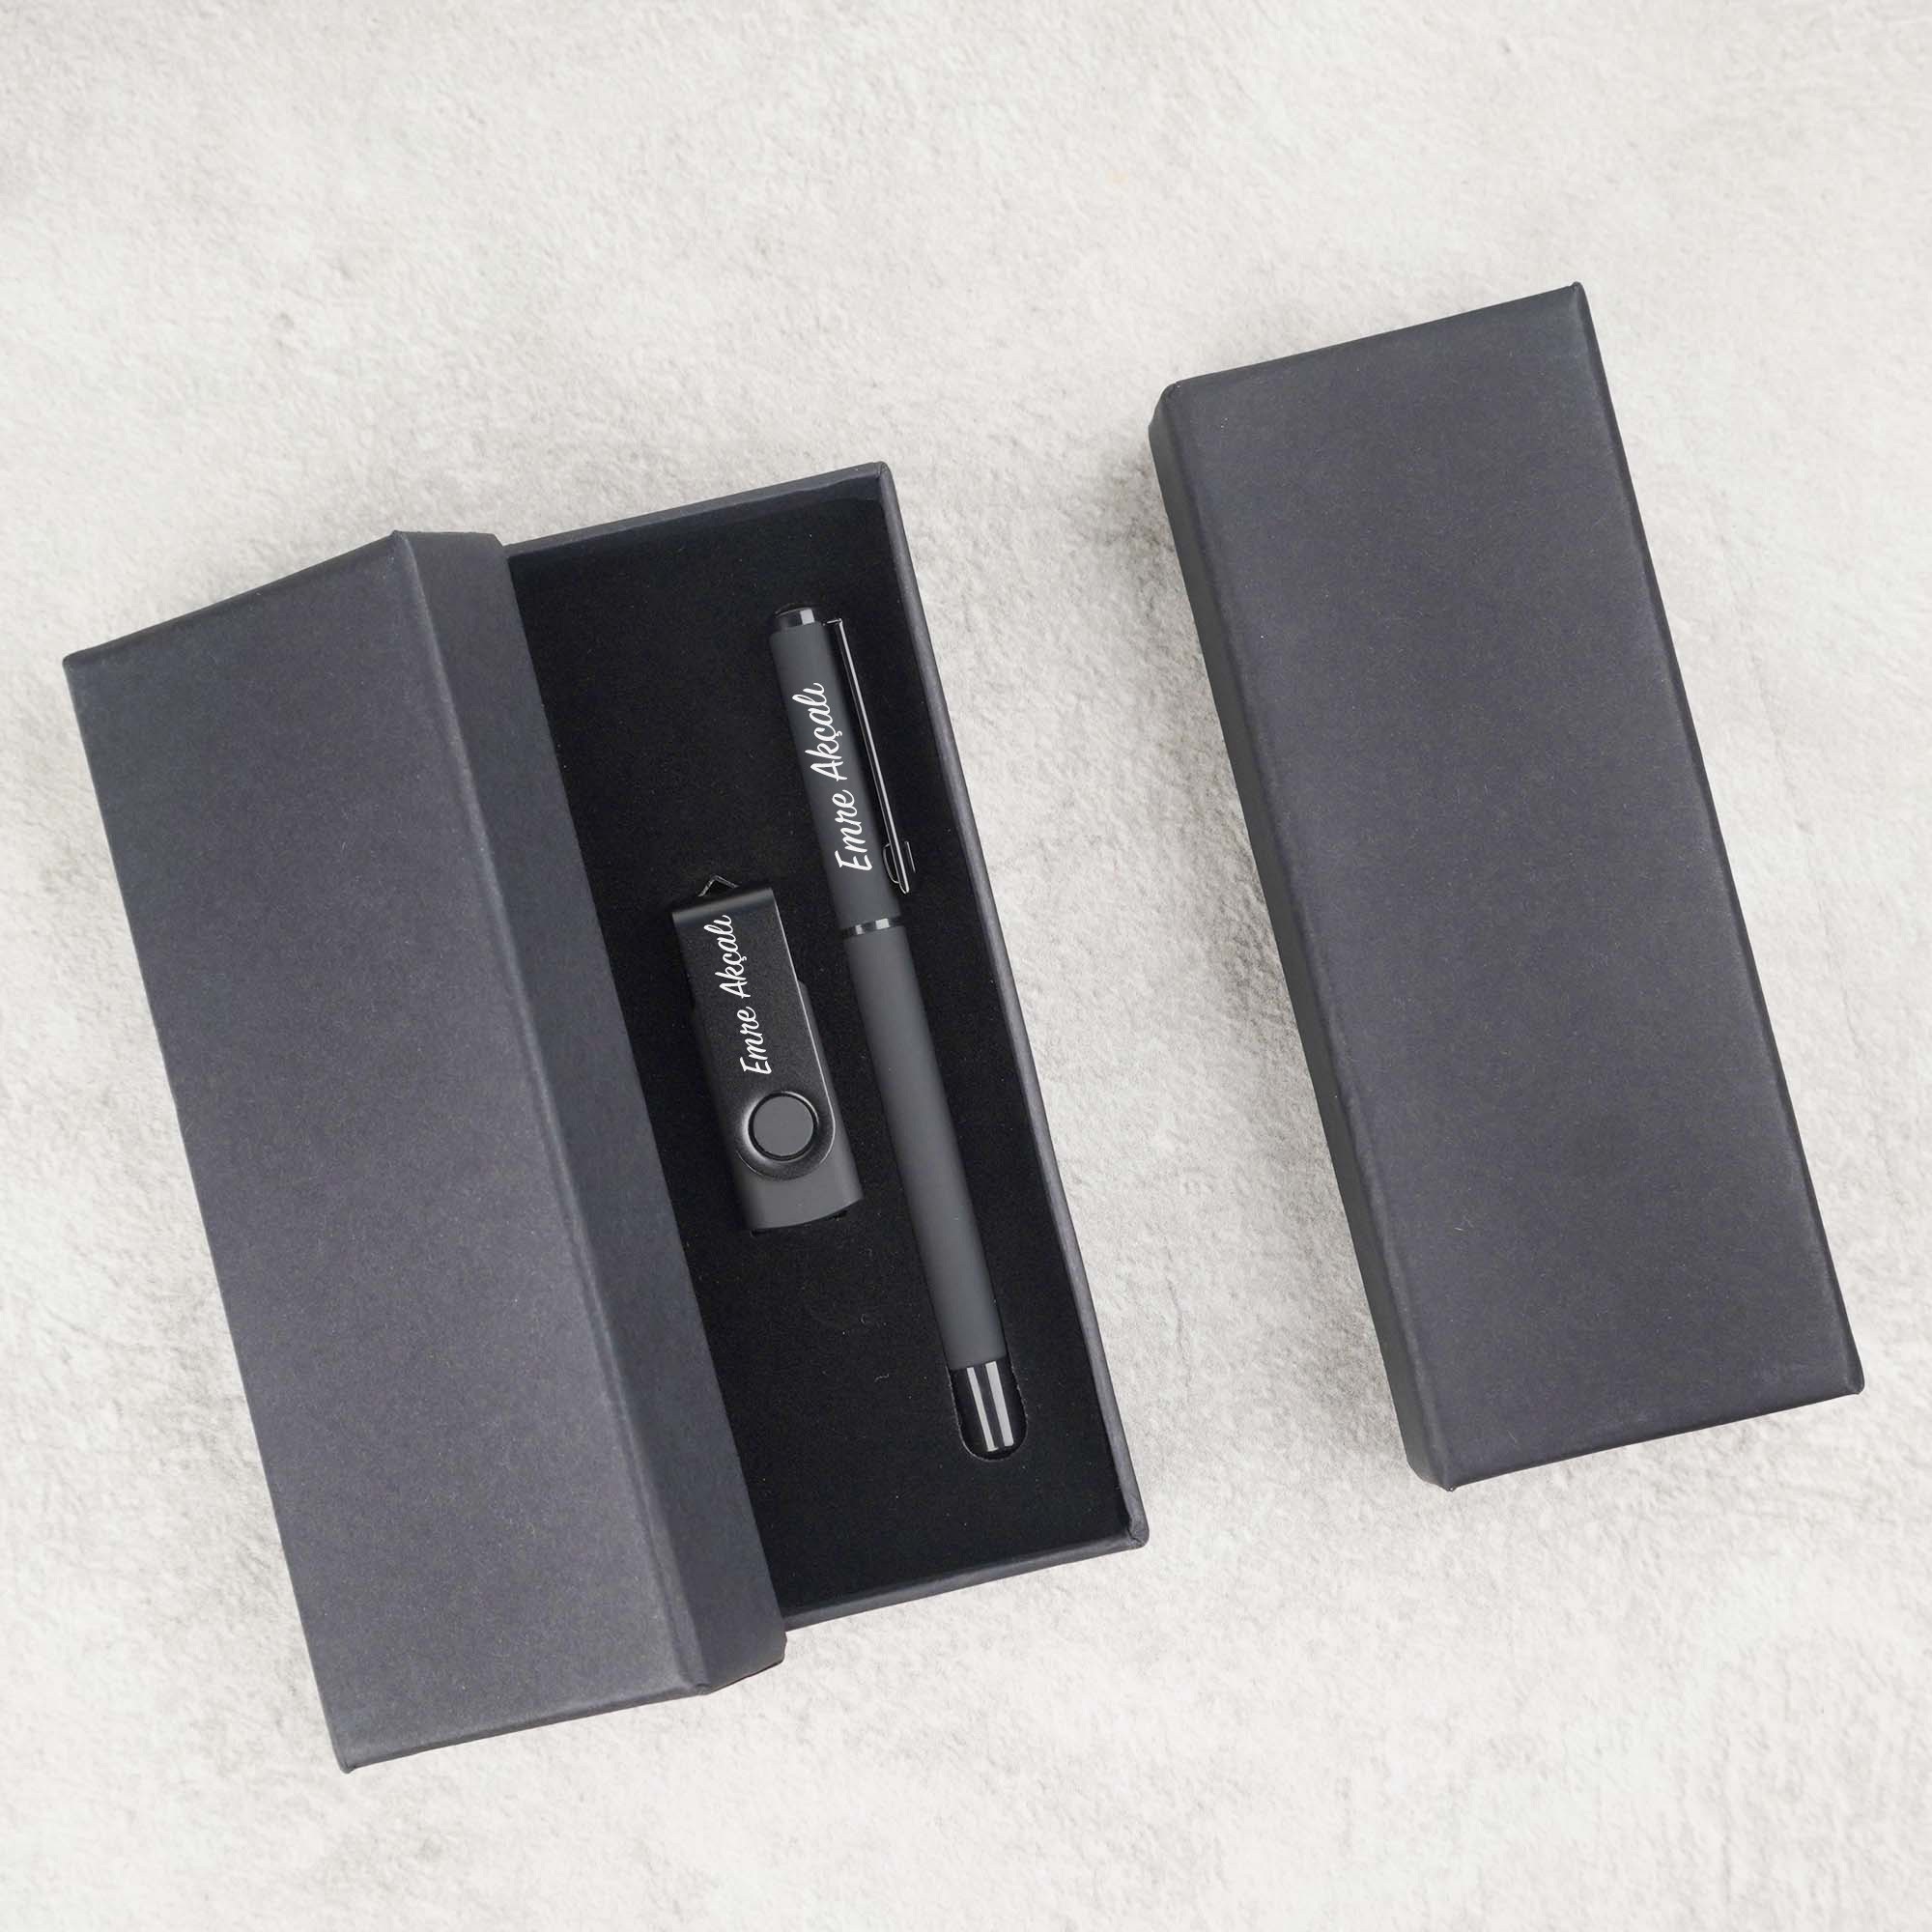 Özel Kutulu İsim Baskılı Siyah USB Bellek ve Kalemli Hediye Seti